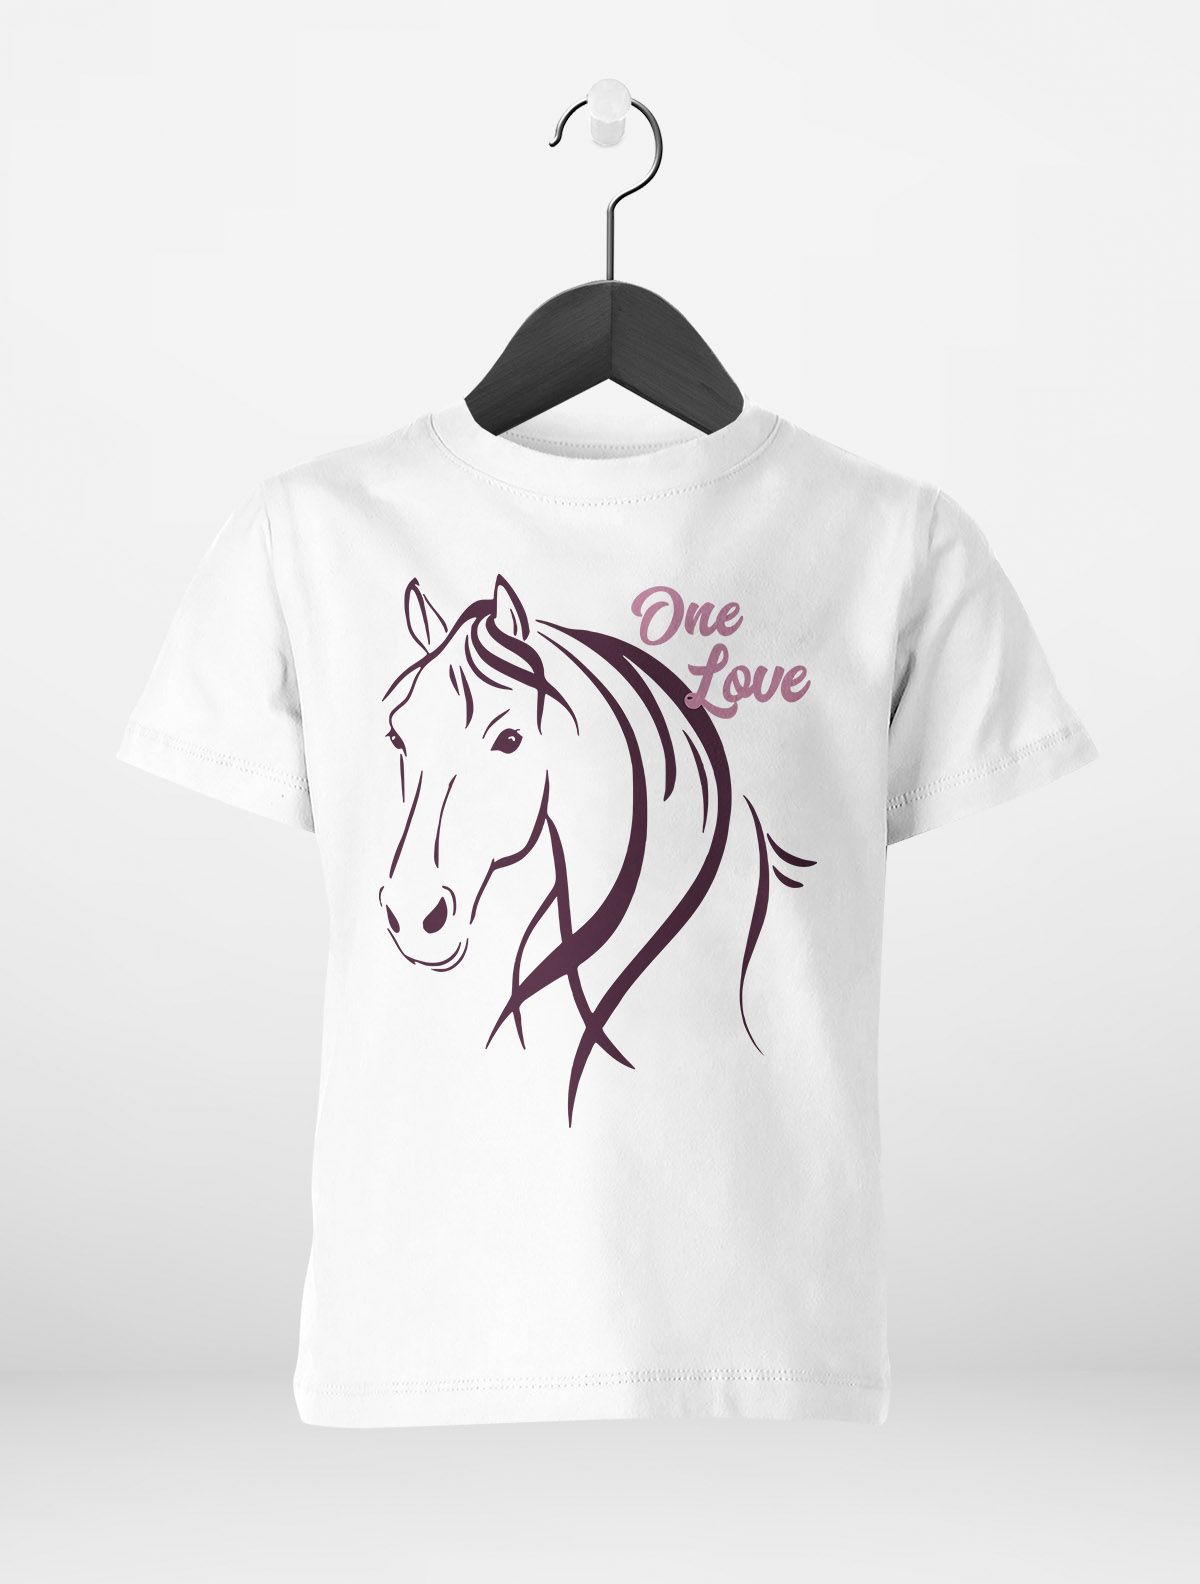 Kinder T-Shirt Mädchen Pferde-Motiv Reiten Geschenk für Pferdeliebhaber  Mädchen | eBay